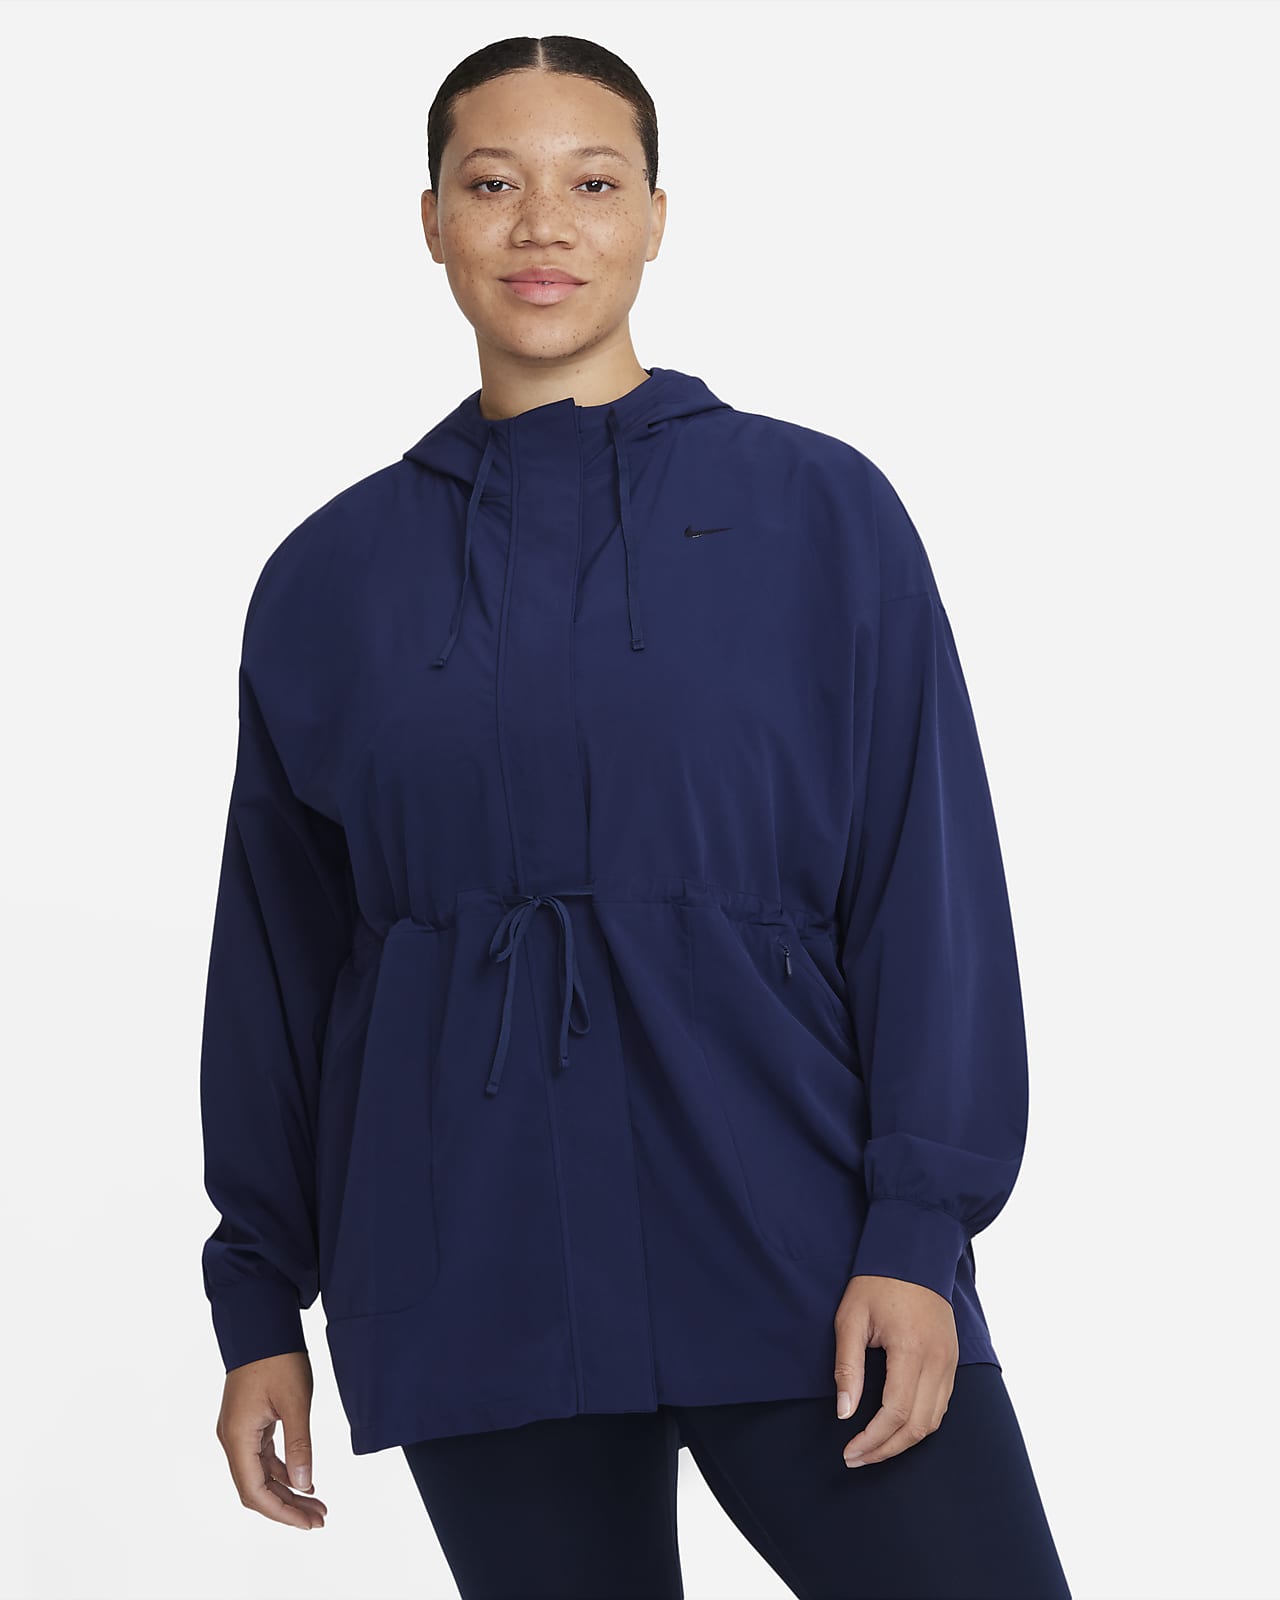 Nike Dri-FIT Bliss Luxe Women's Anorak Jacket (Plus Size)